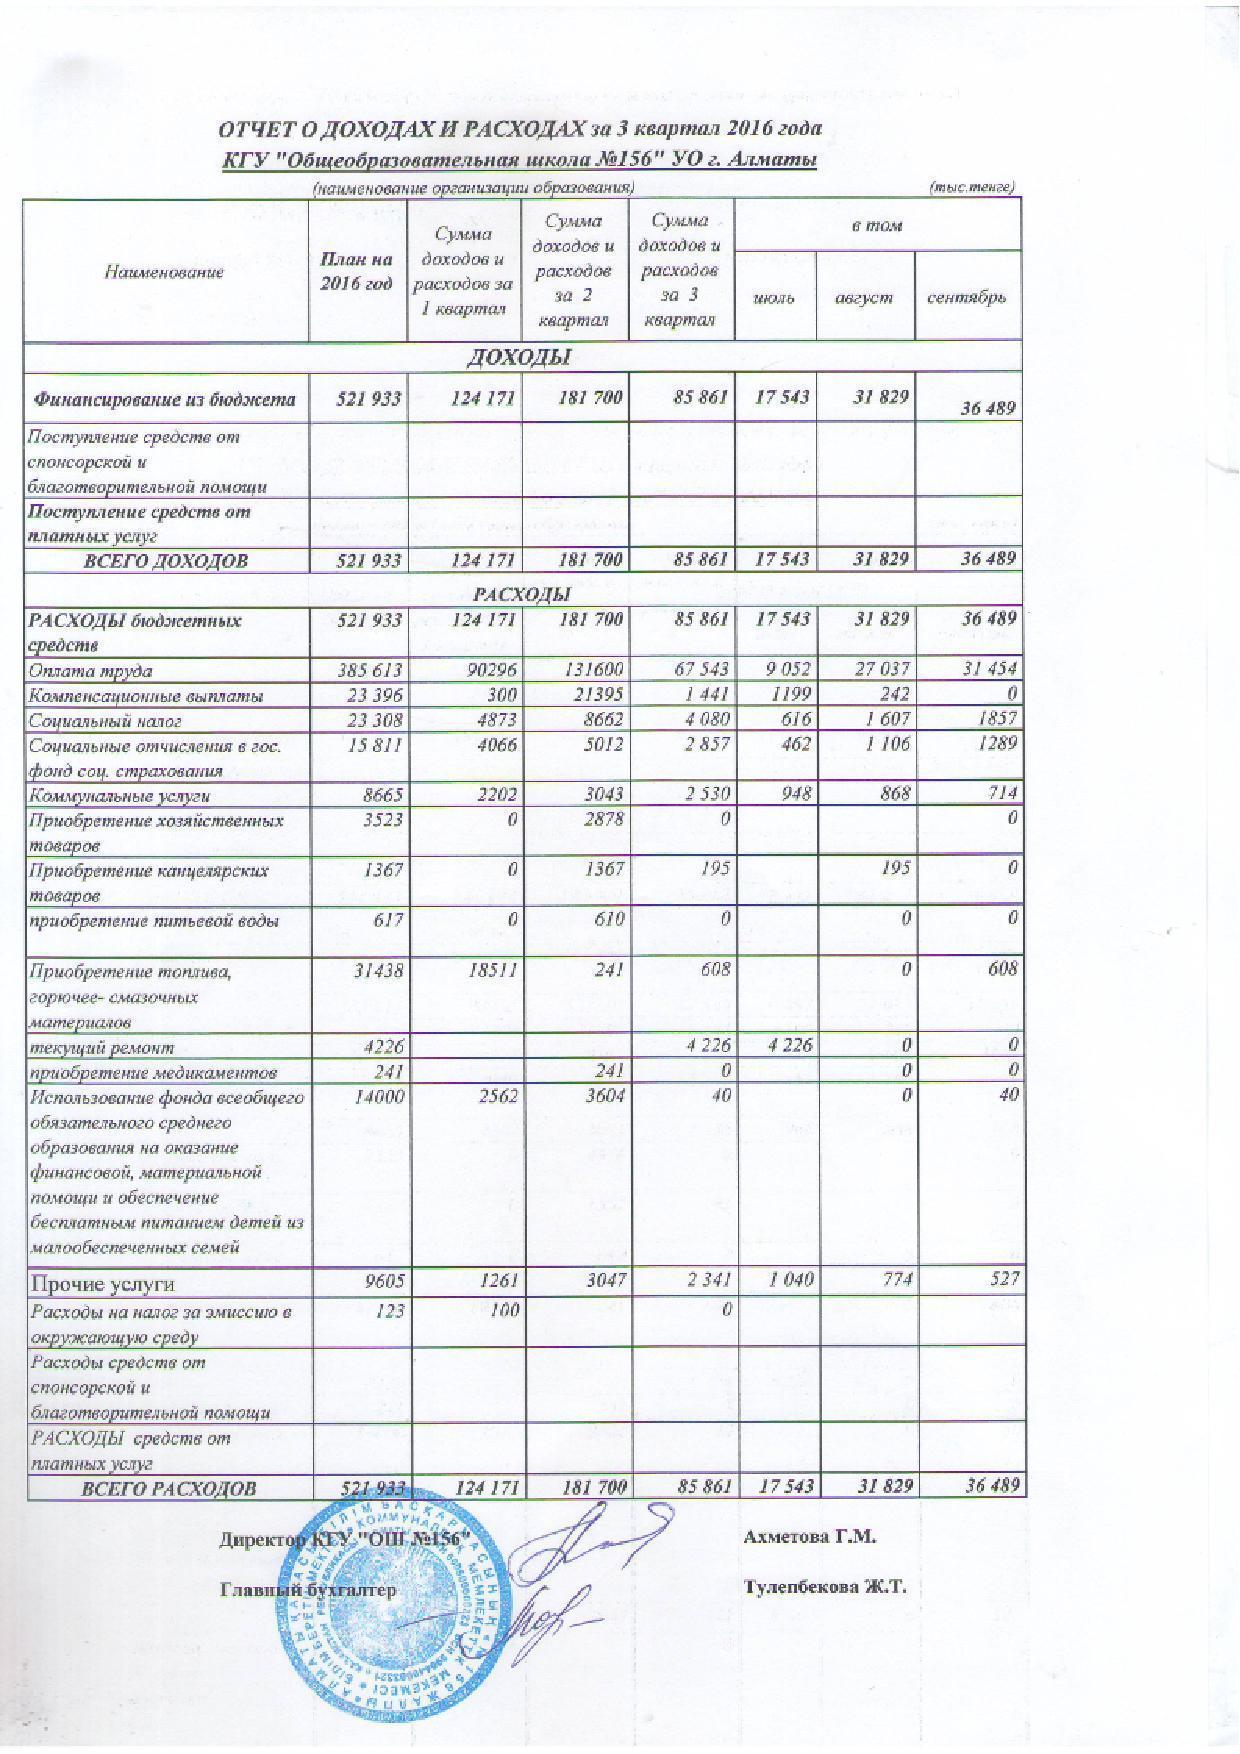 Отчет о доходах и расходах за 3 Квартал 2016 и пояснительная записка